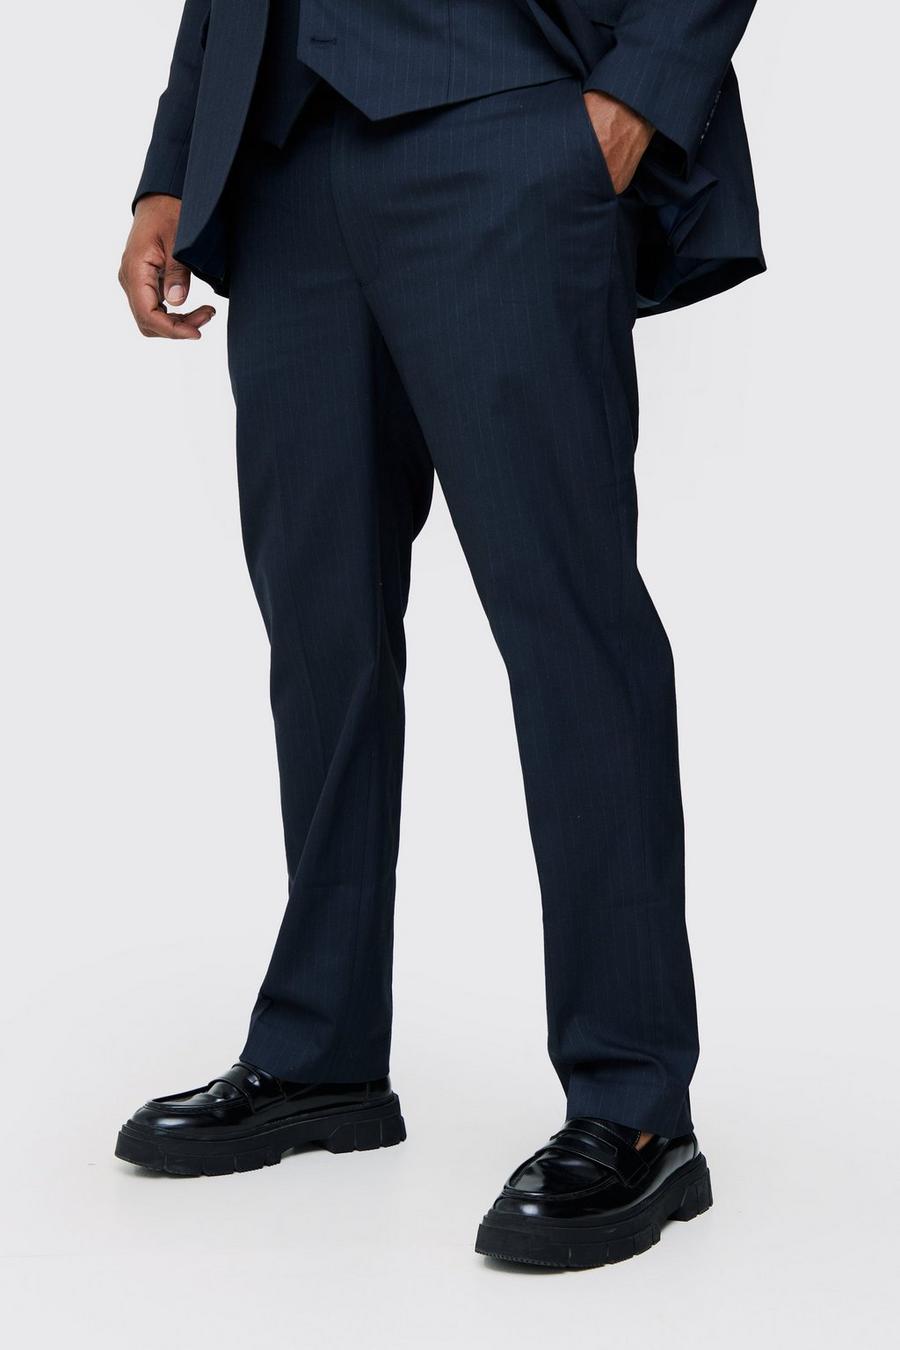 Pantalón Plus de traje Regular con raya diplomática azul marino, Navy